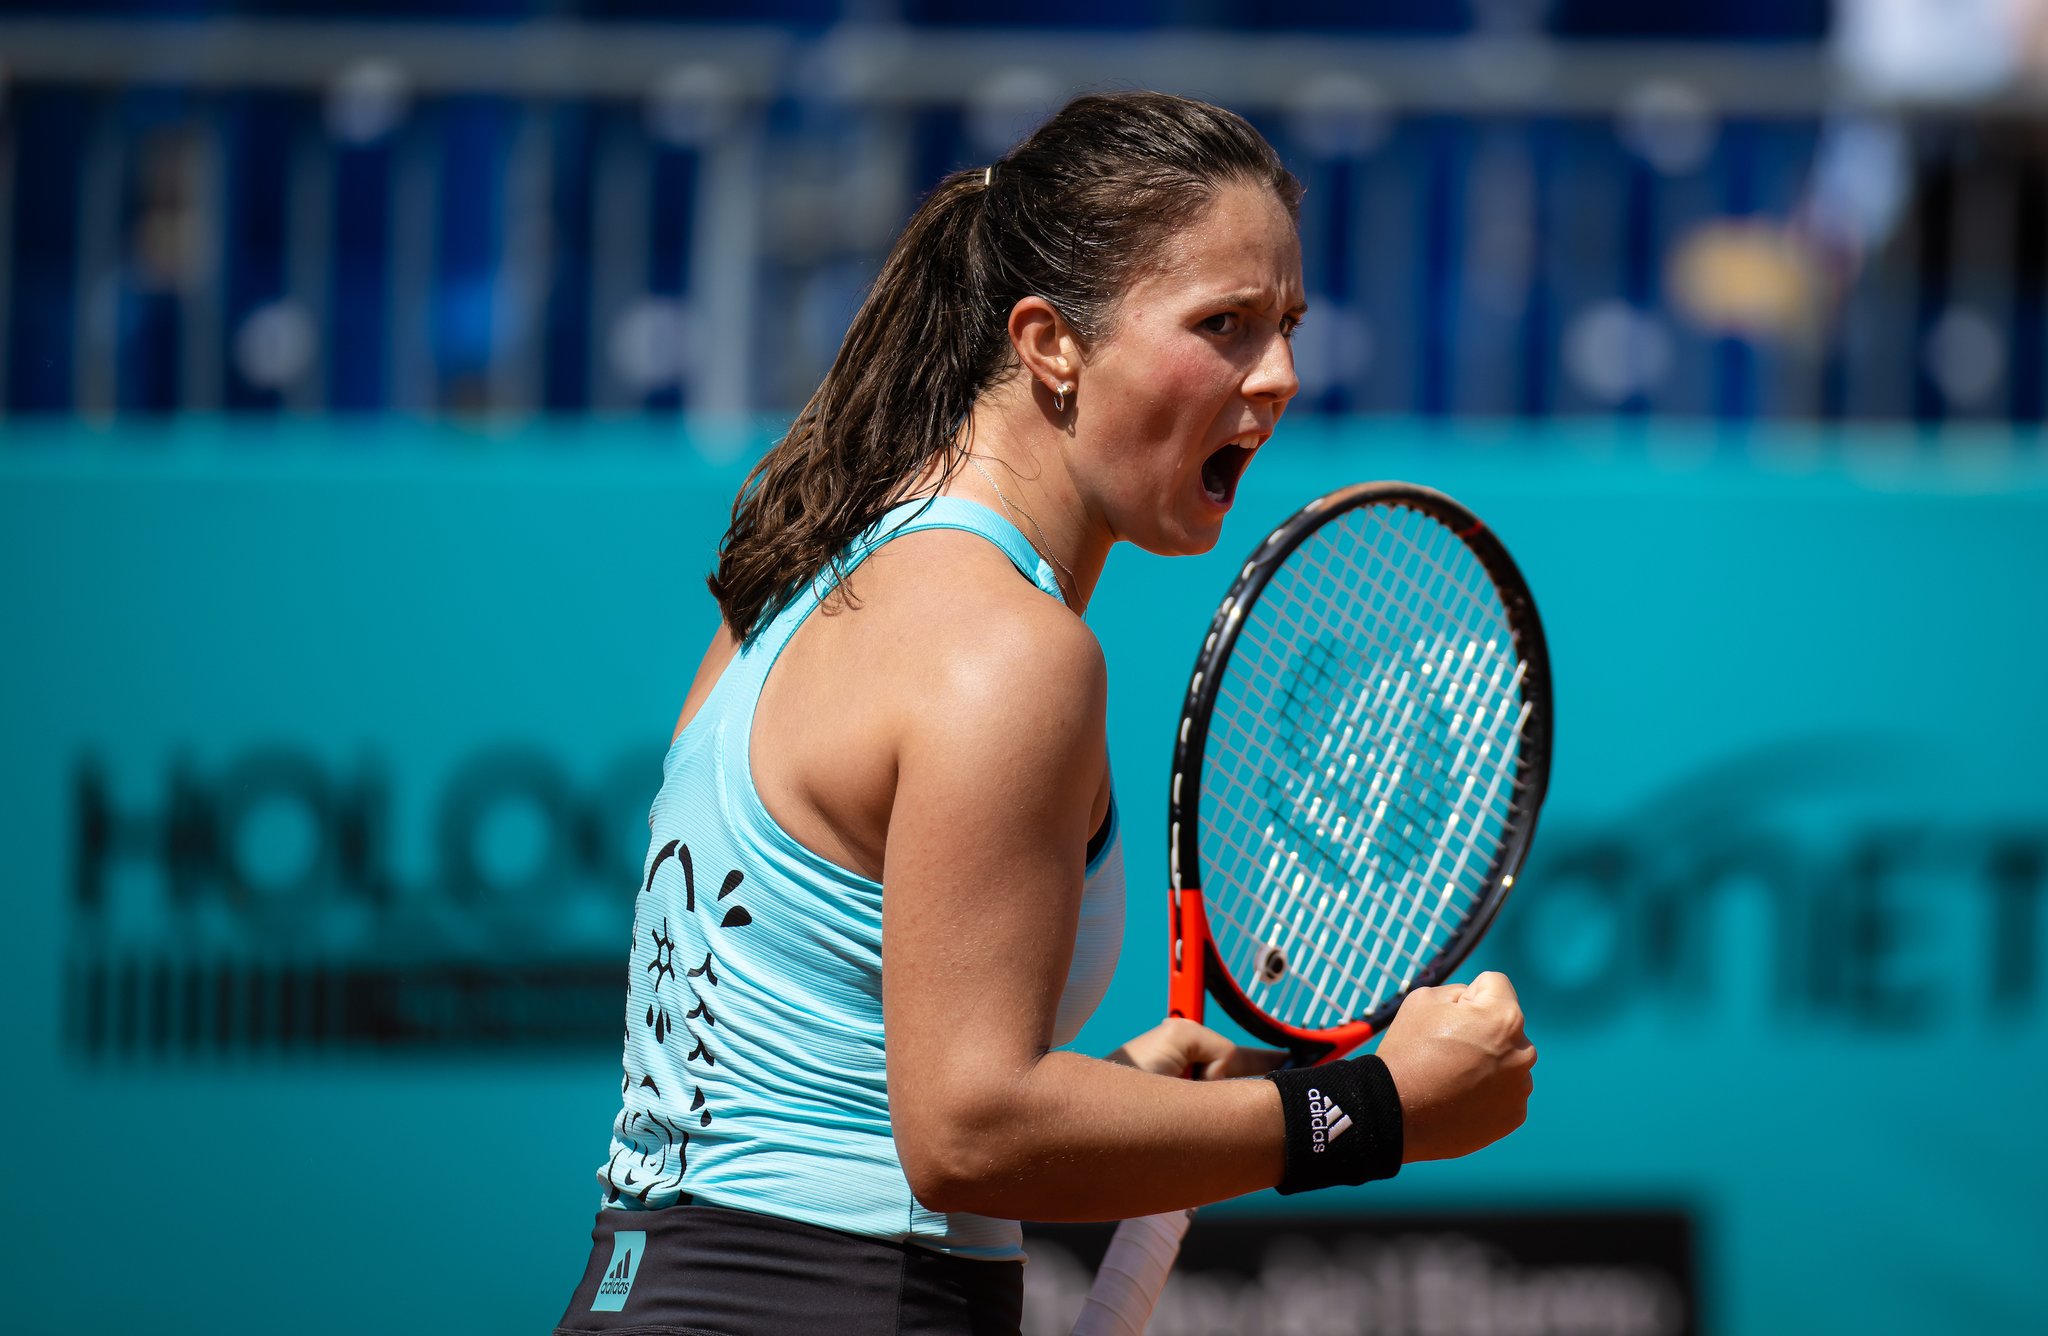 Касаткина проиграла Андрееску в четвертьфинале теннисного турнира в Германии